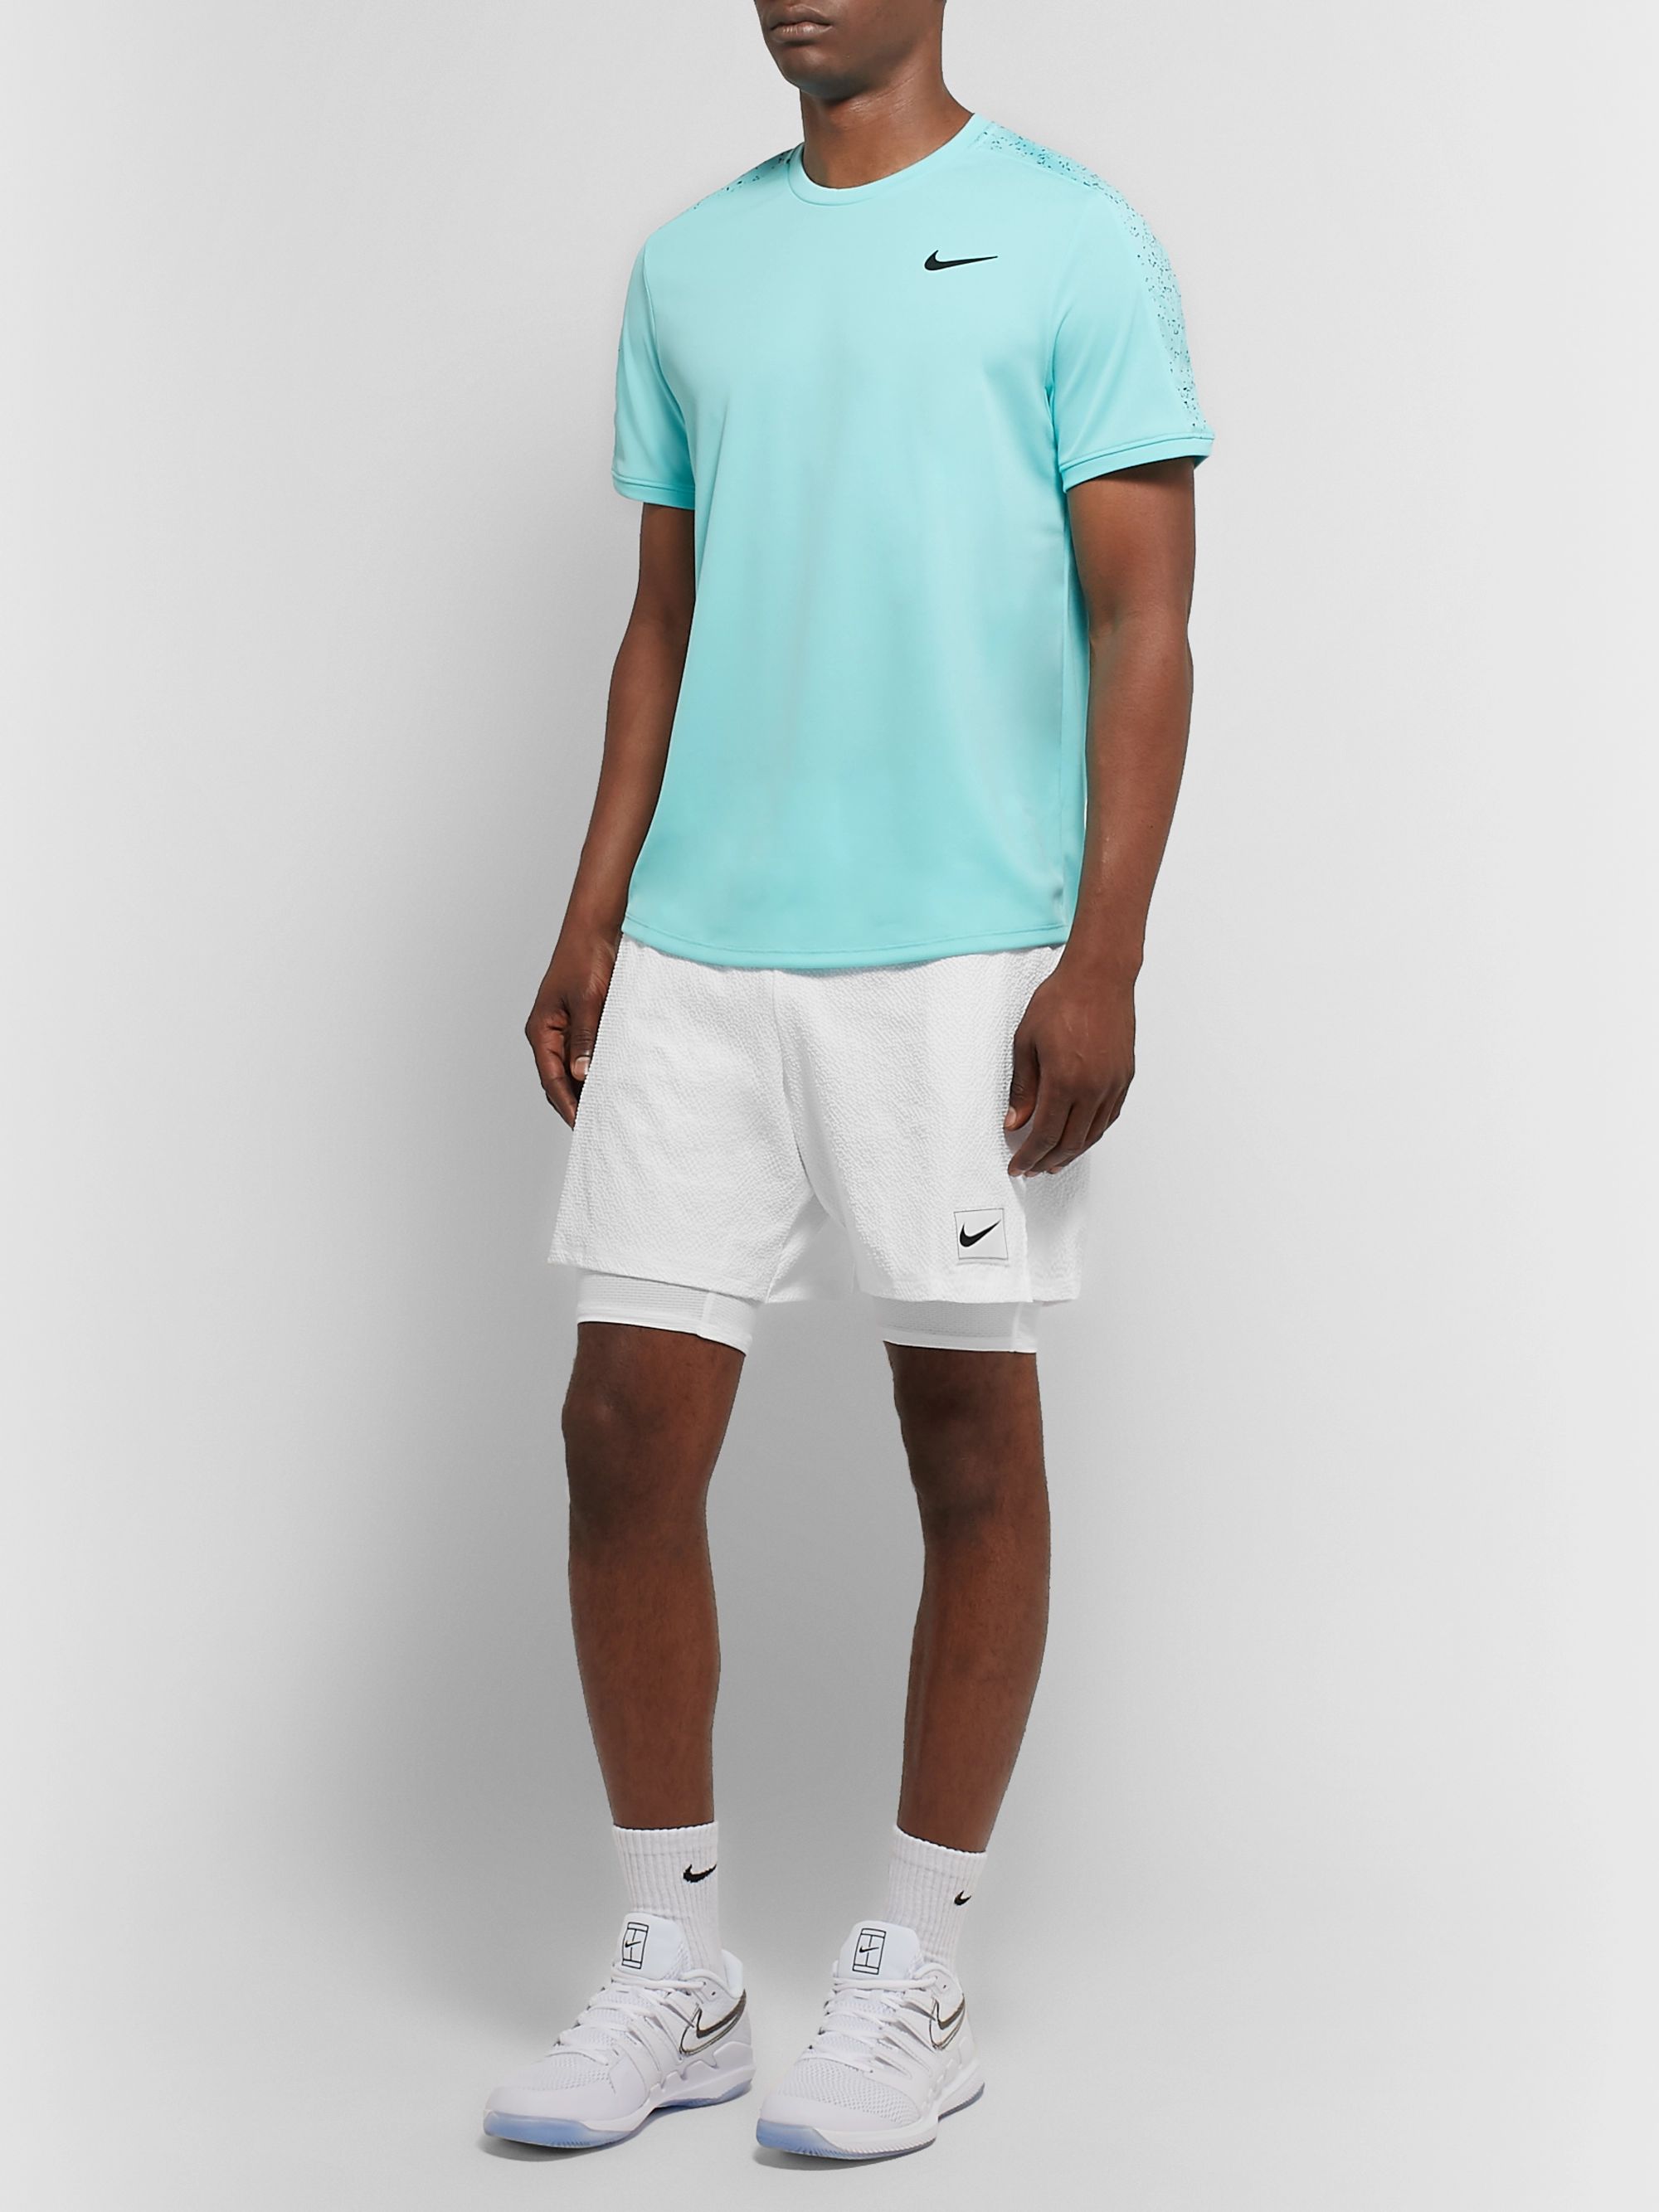 Men's Tennis Clothes | Designer Sportswear | MR PORTER